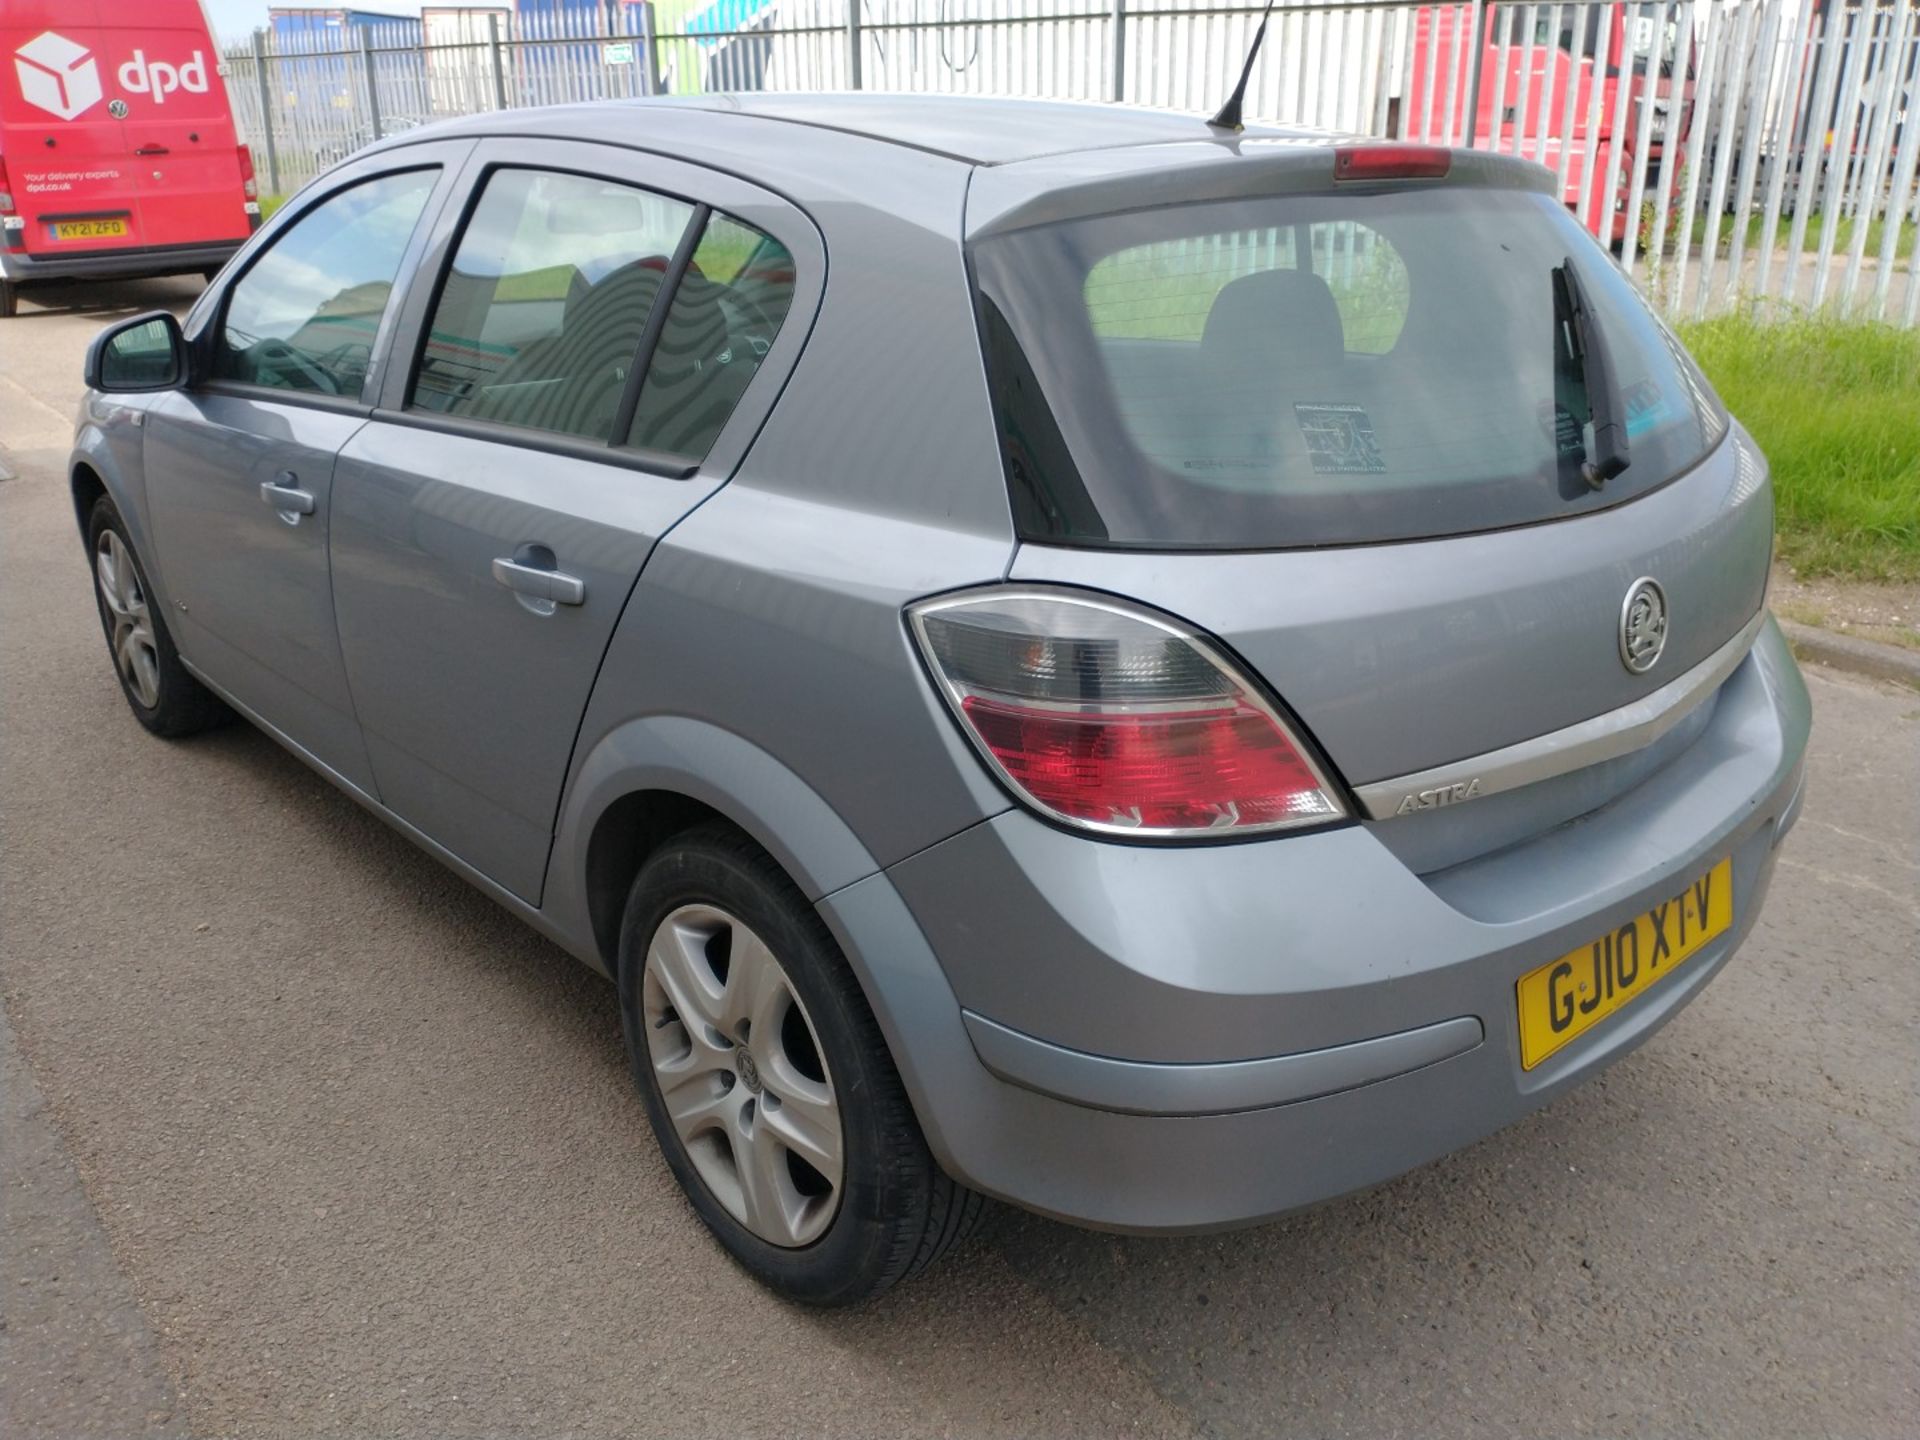 2010 Vauxhall Astra Active 5dr Hatchback 1.4 Petrol - CL505 - Ref: VVS0014 - NO VAT ON THE HAMMER - - Image 3 of 18